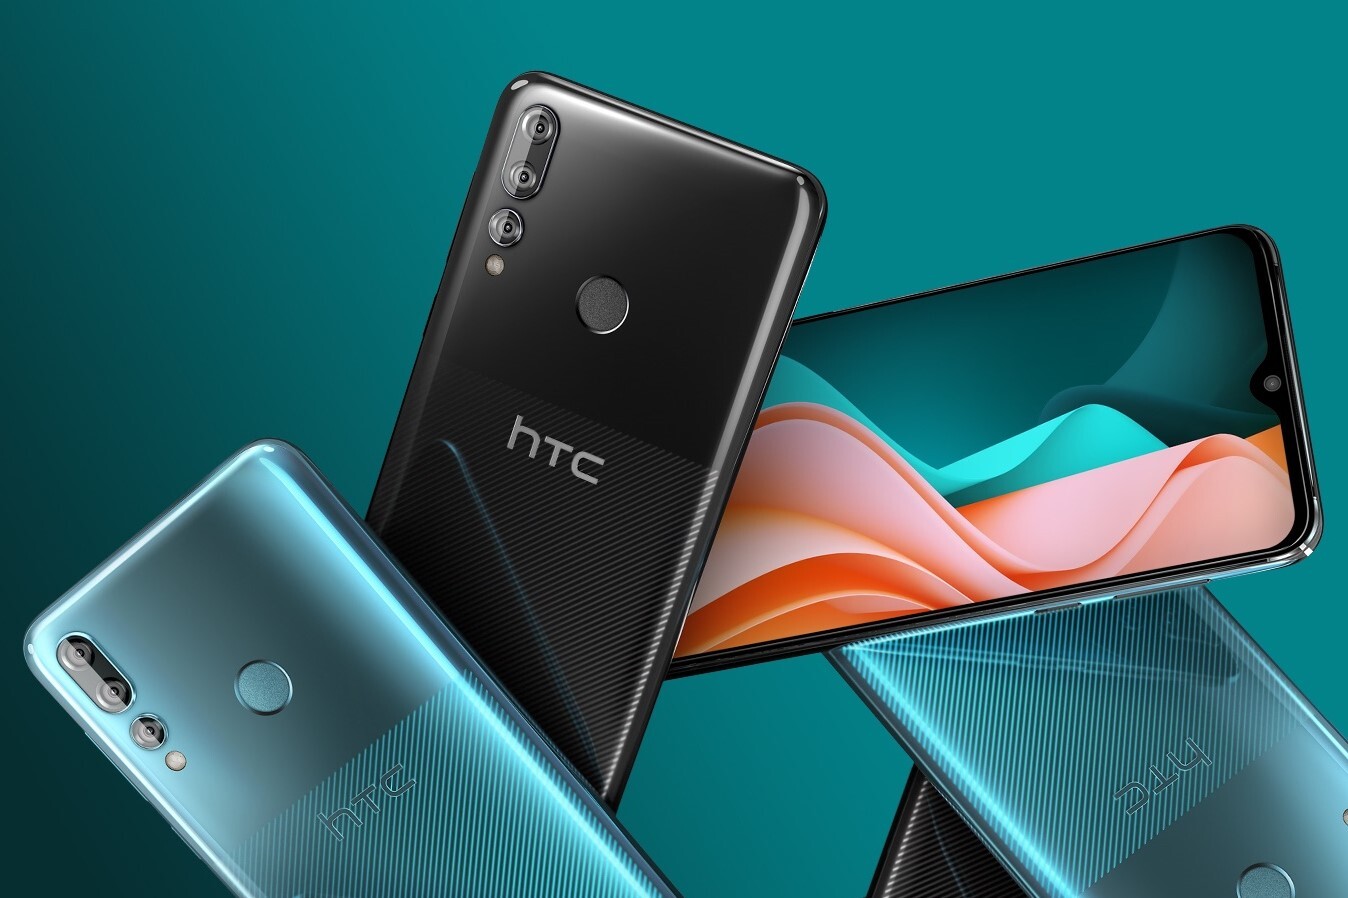 HTC ra mắt smartphone
giá rẻ Desire 19s với màn hình 'giọt nước' 6,2
inch,  chip Helio P22, 3GB RAM, giá 195USD